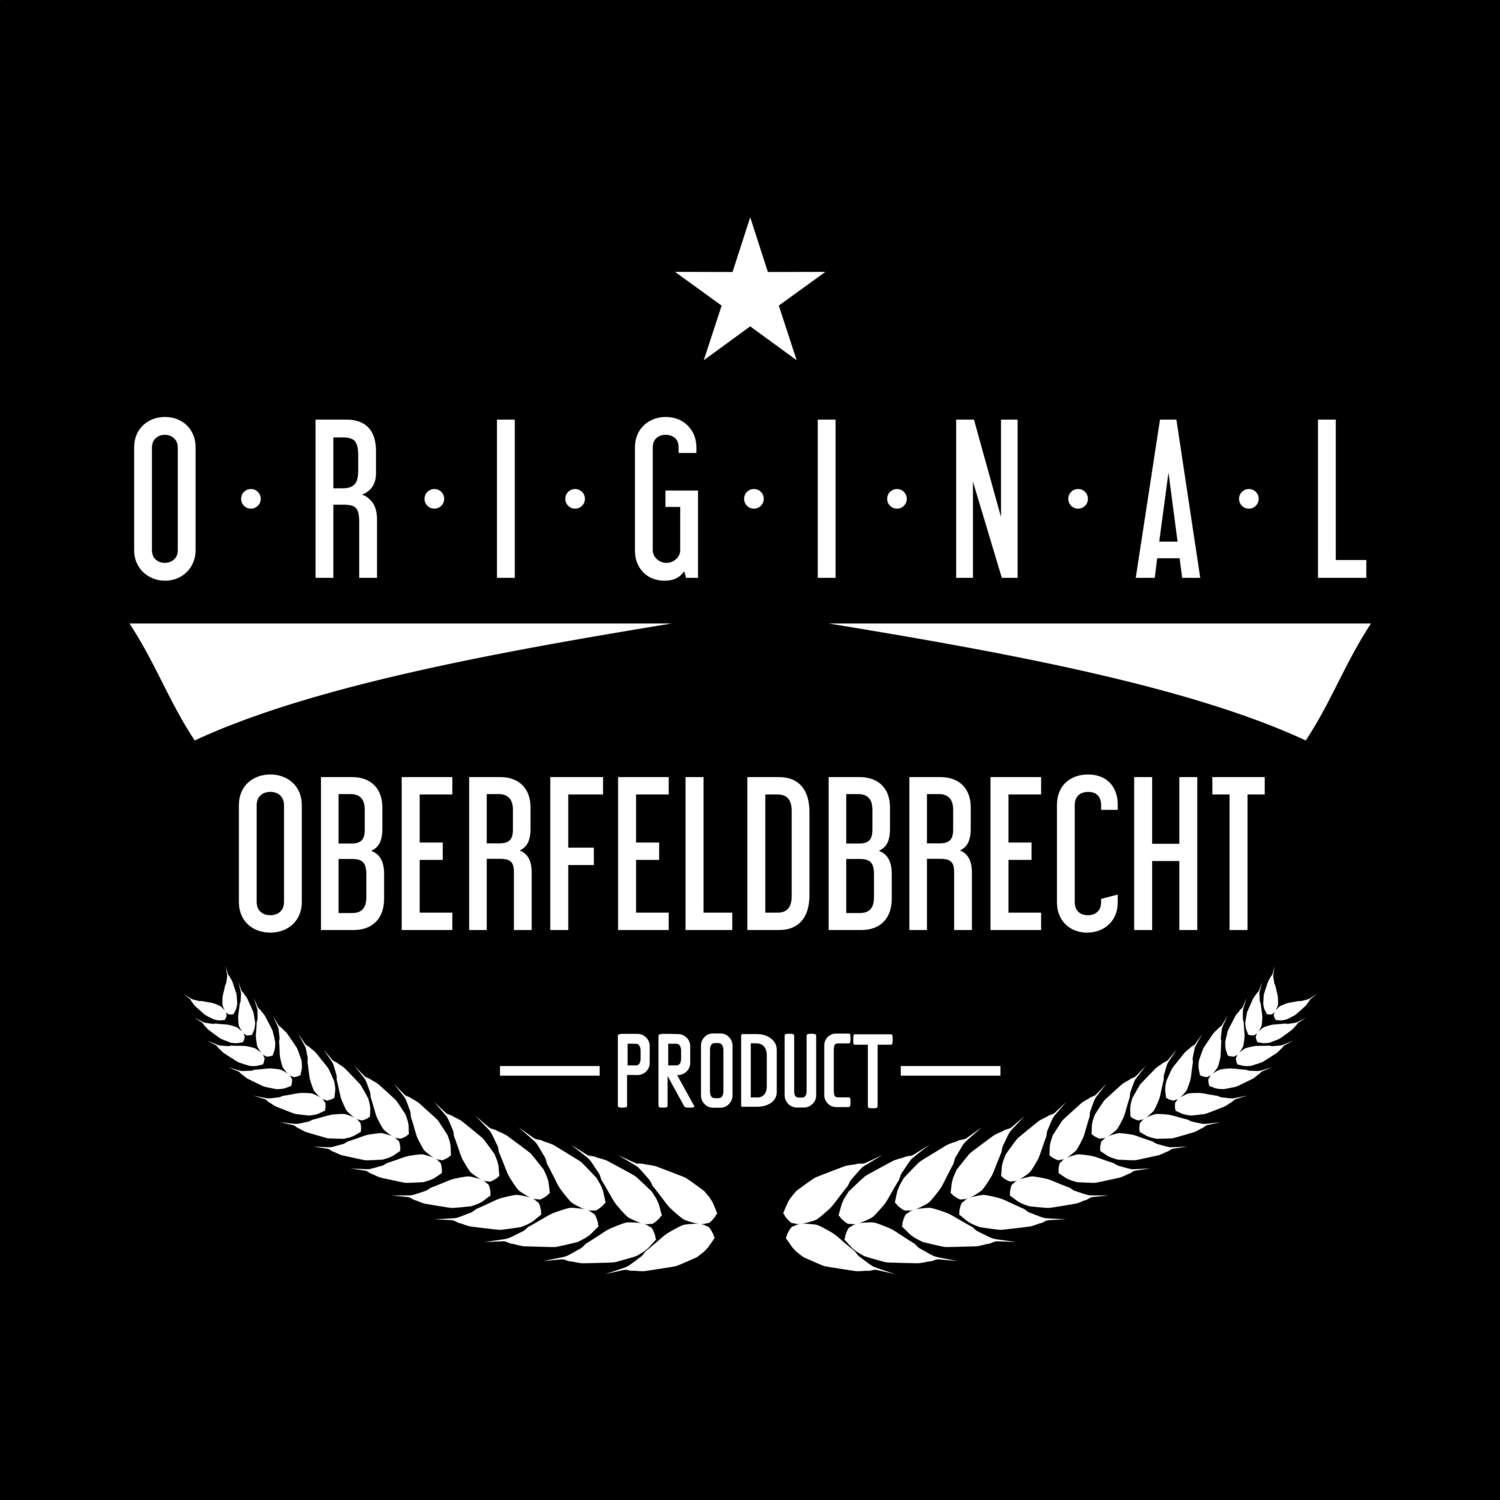 Oberfeldbrecht T-Shirt »Original Product«